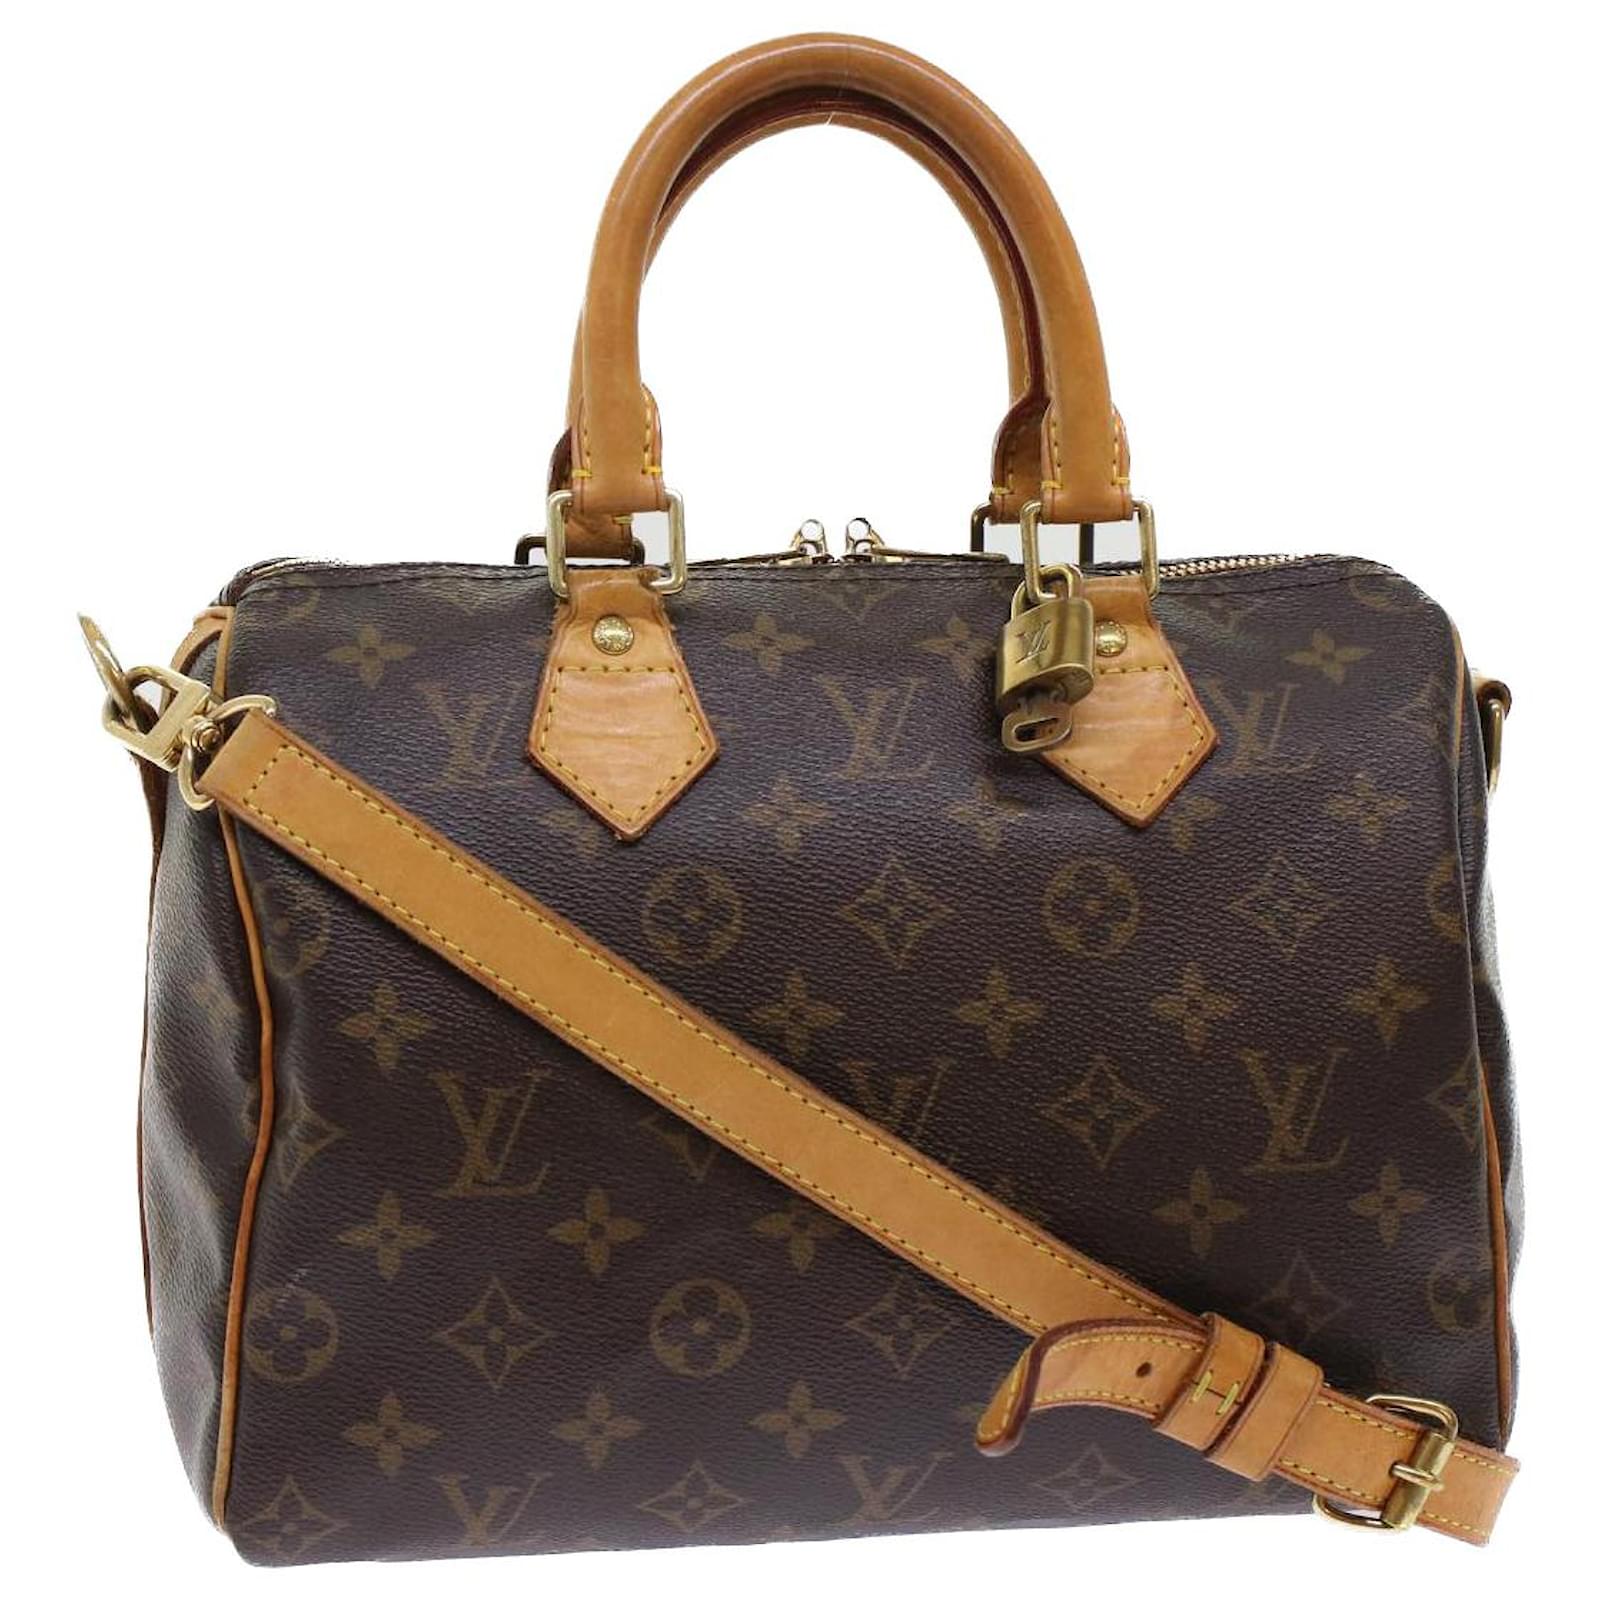 Louis Vuitton Monogram Speedy Bandouliere 25 Hand Bag 2way M45948